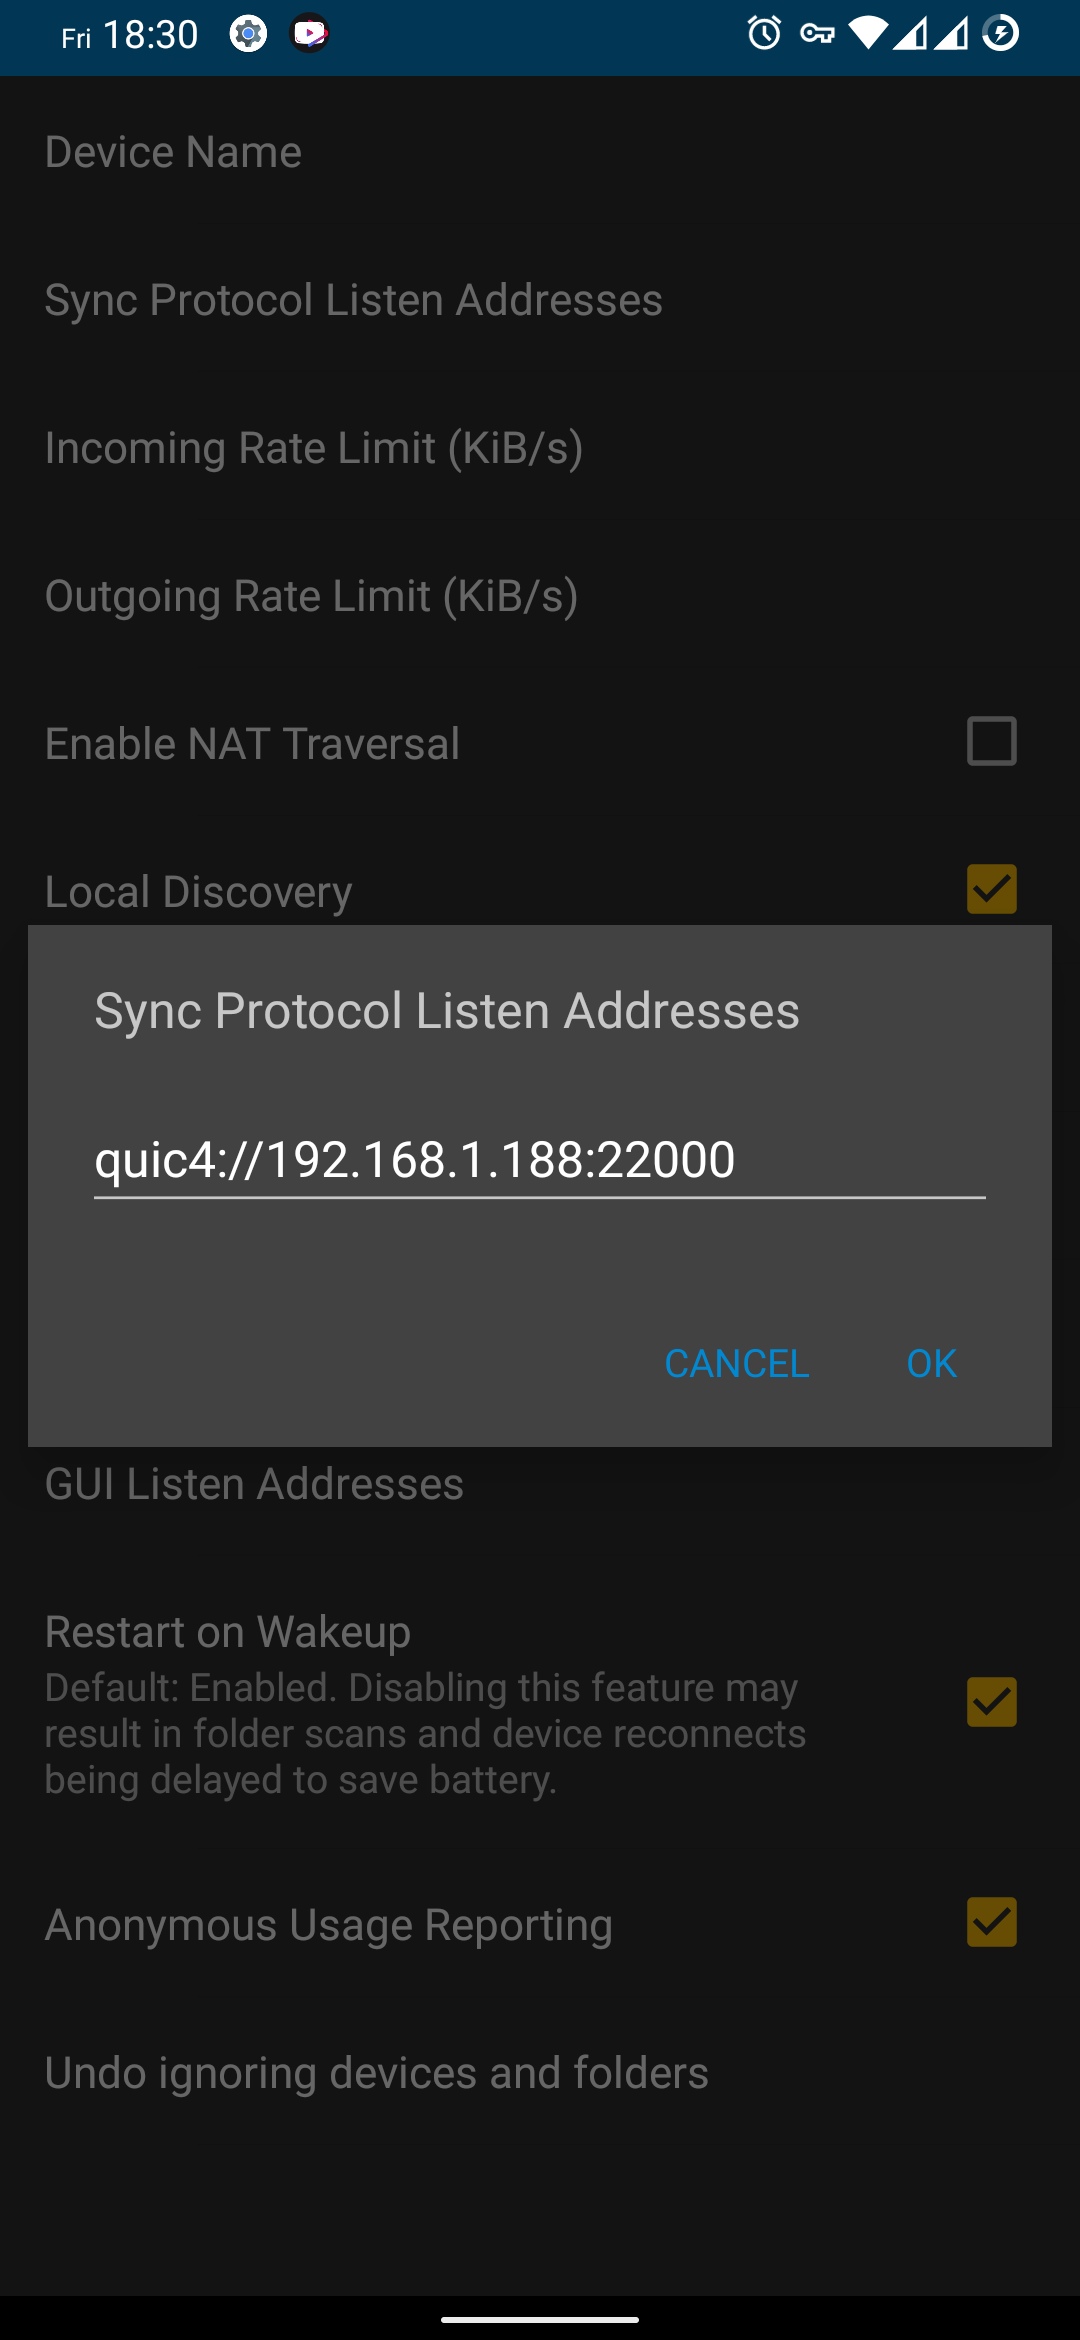 oandbackupx-syncthing-backup-android-phone-settings-phone